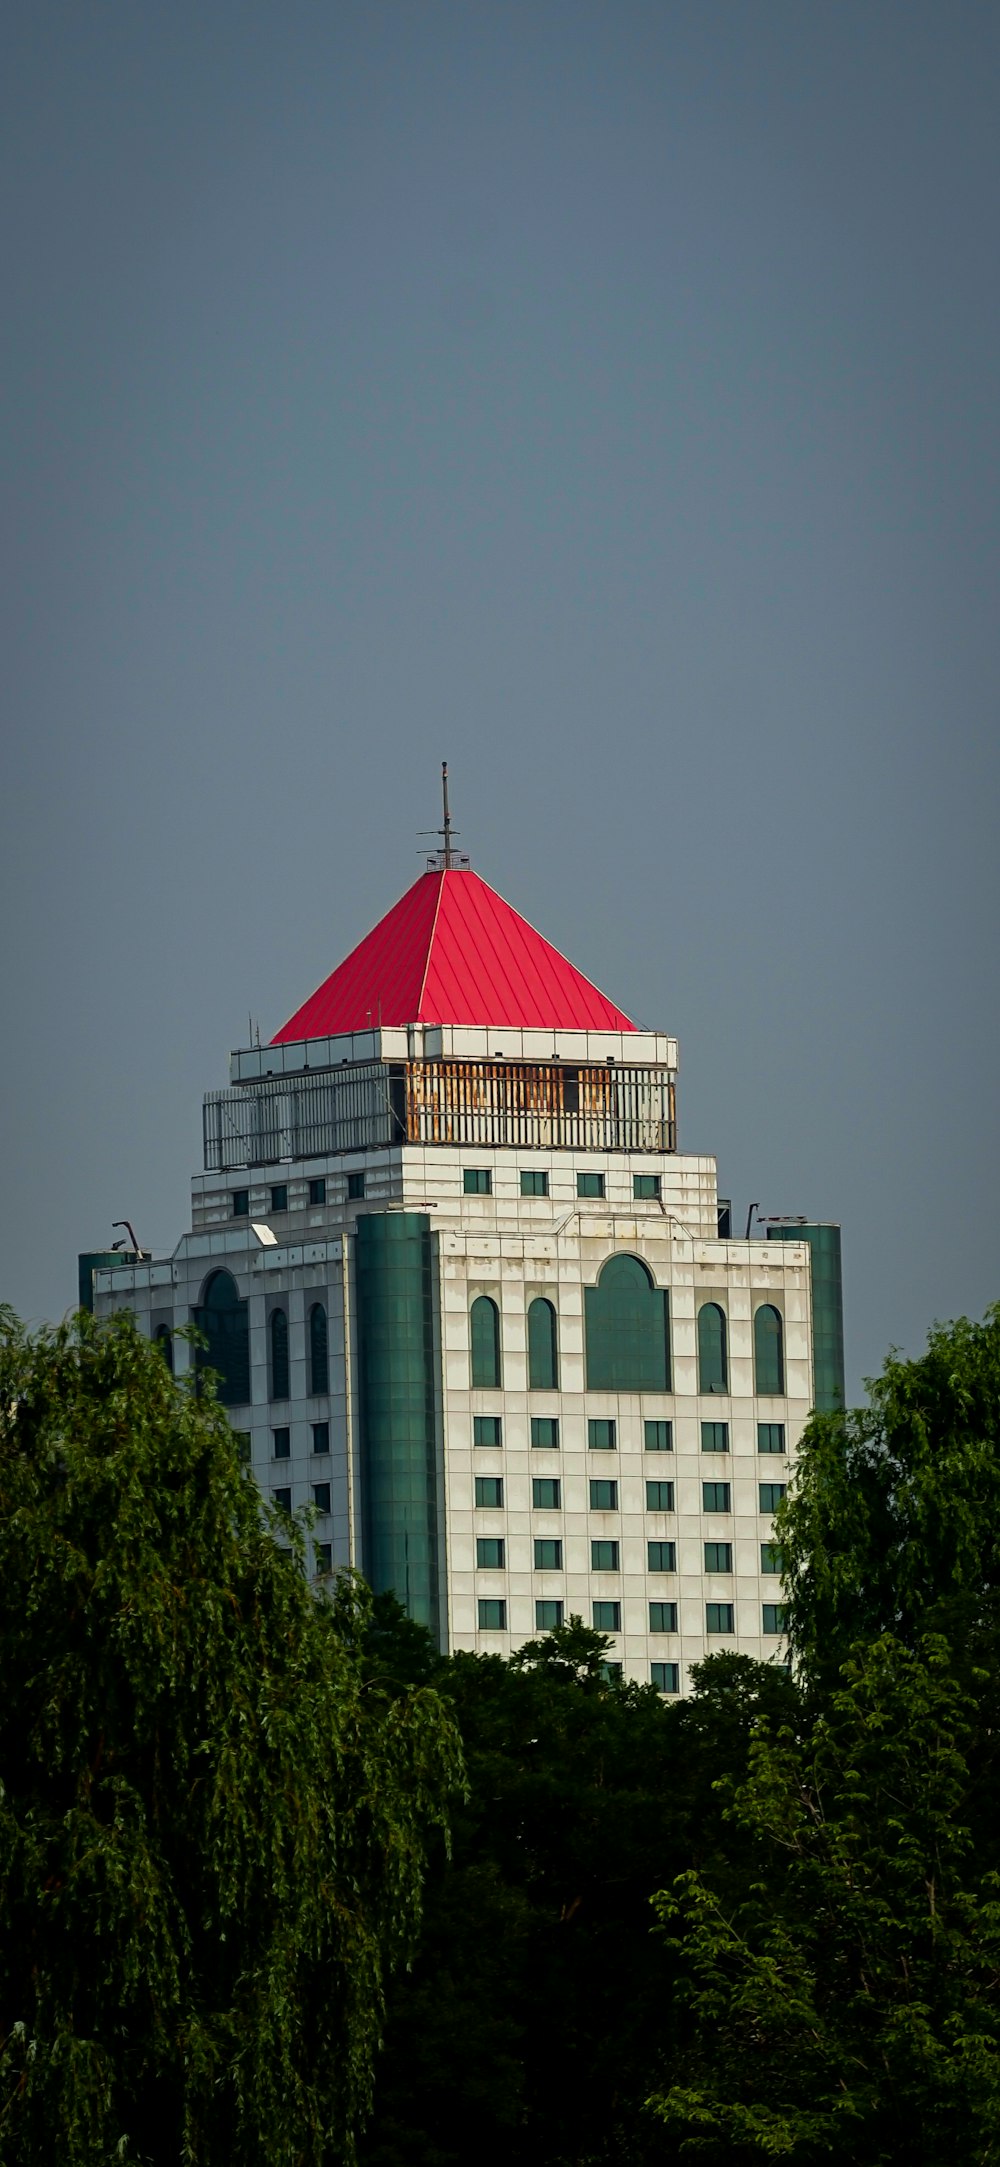 Un edificio alto y blanco con un techo rojo